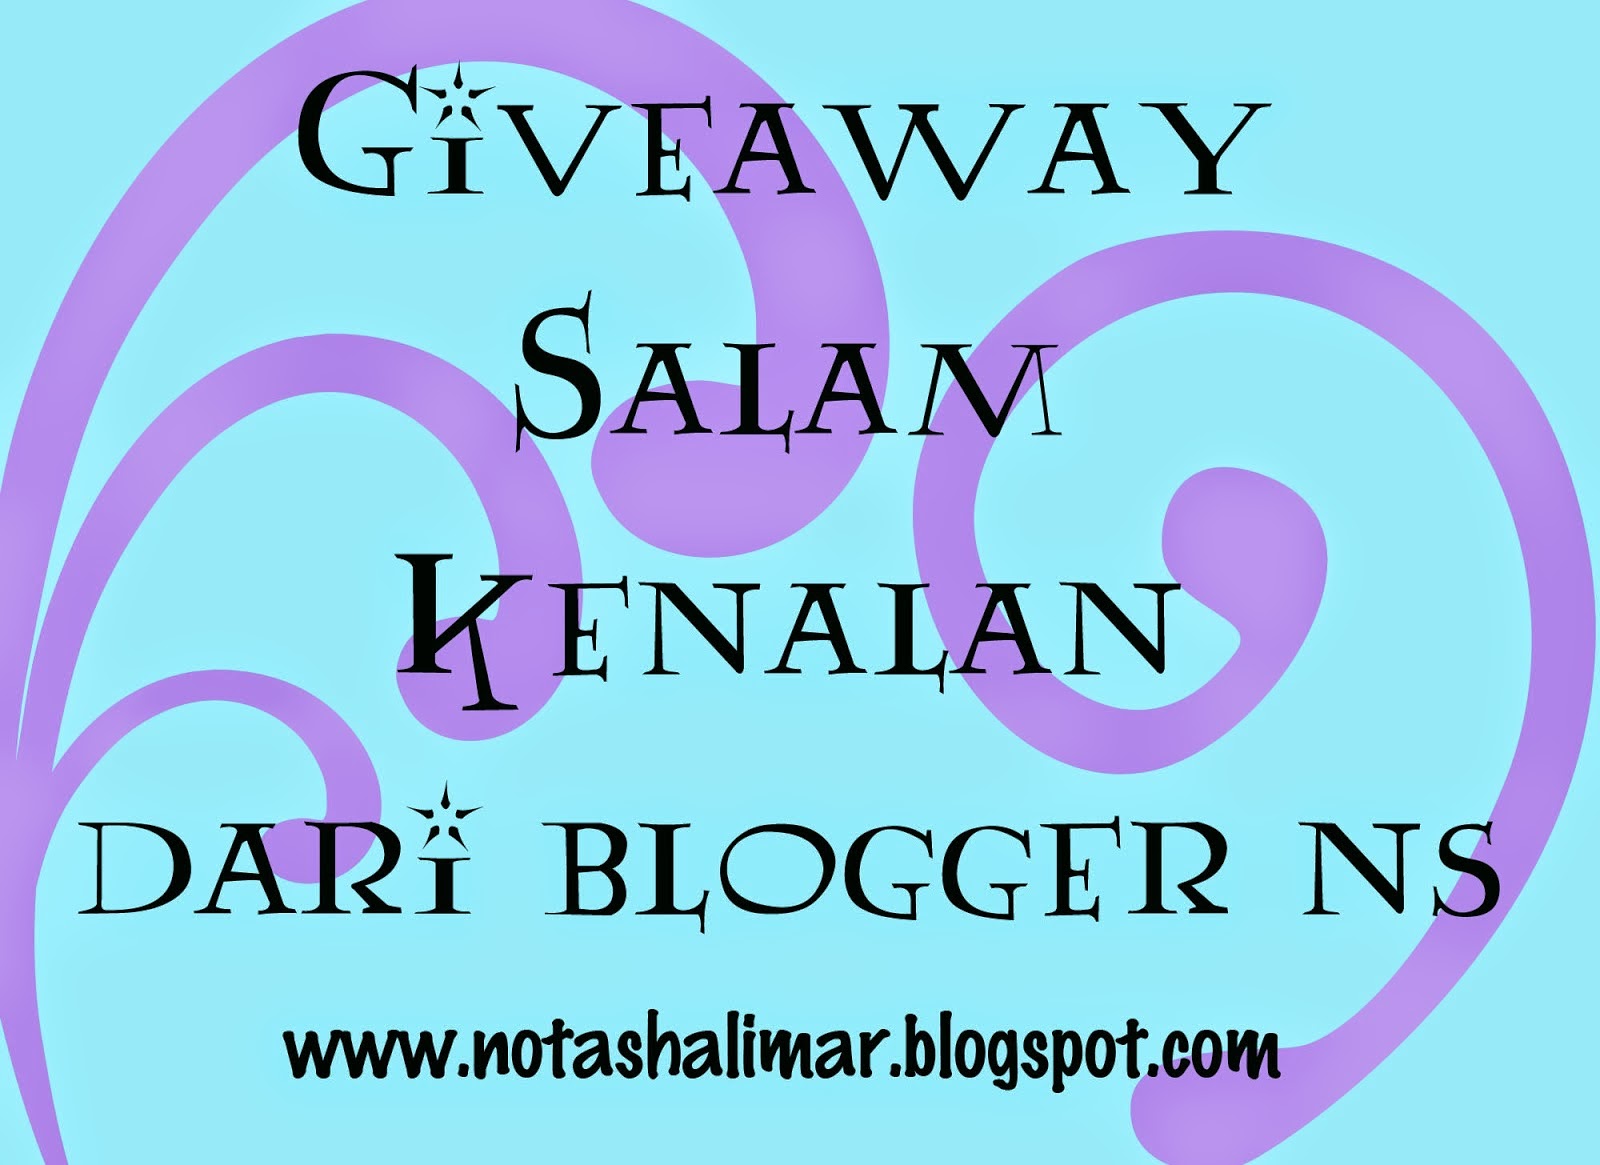 http://notashalimar.blogspot.com/2014/06/giveaway-salam-kenalan-dari-blogger.html